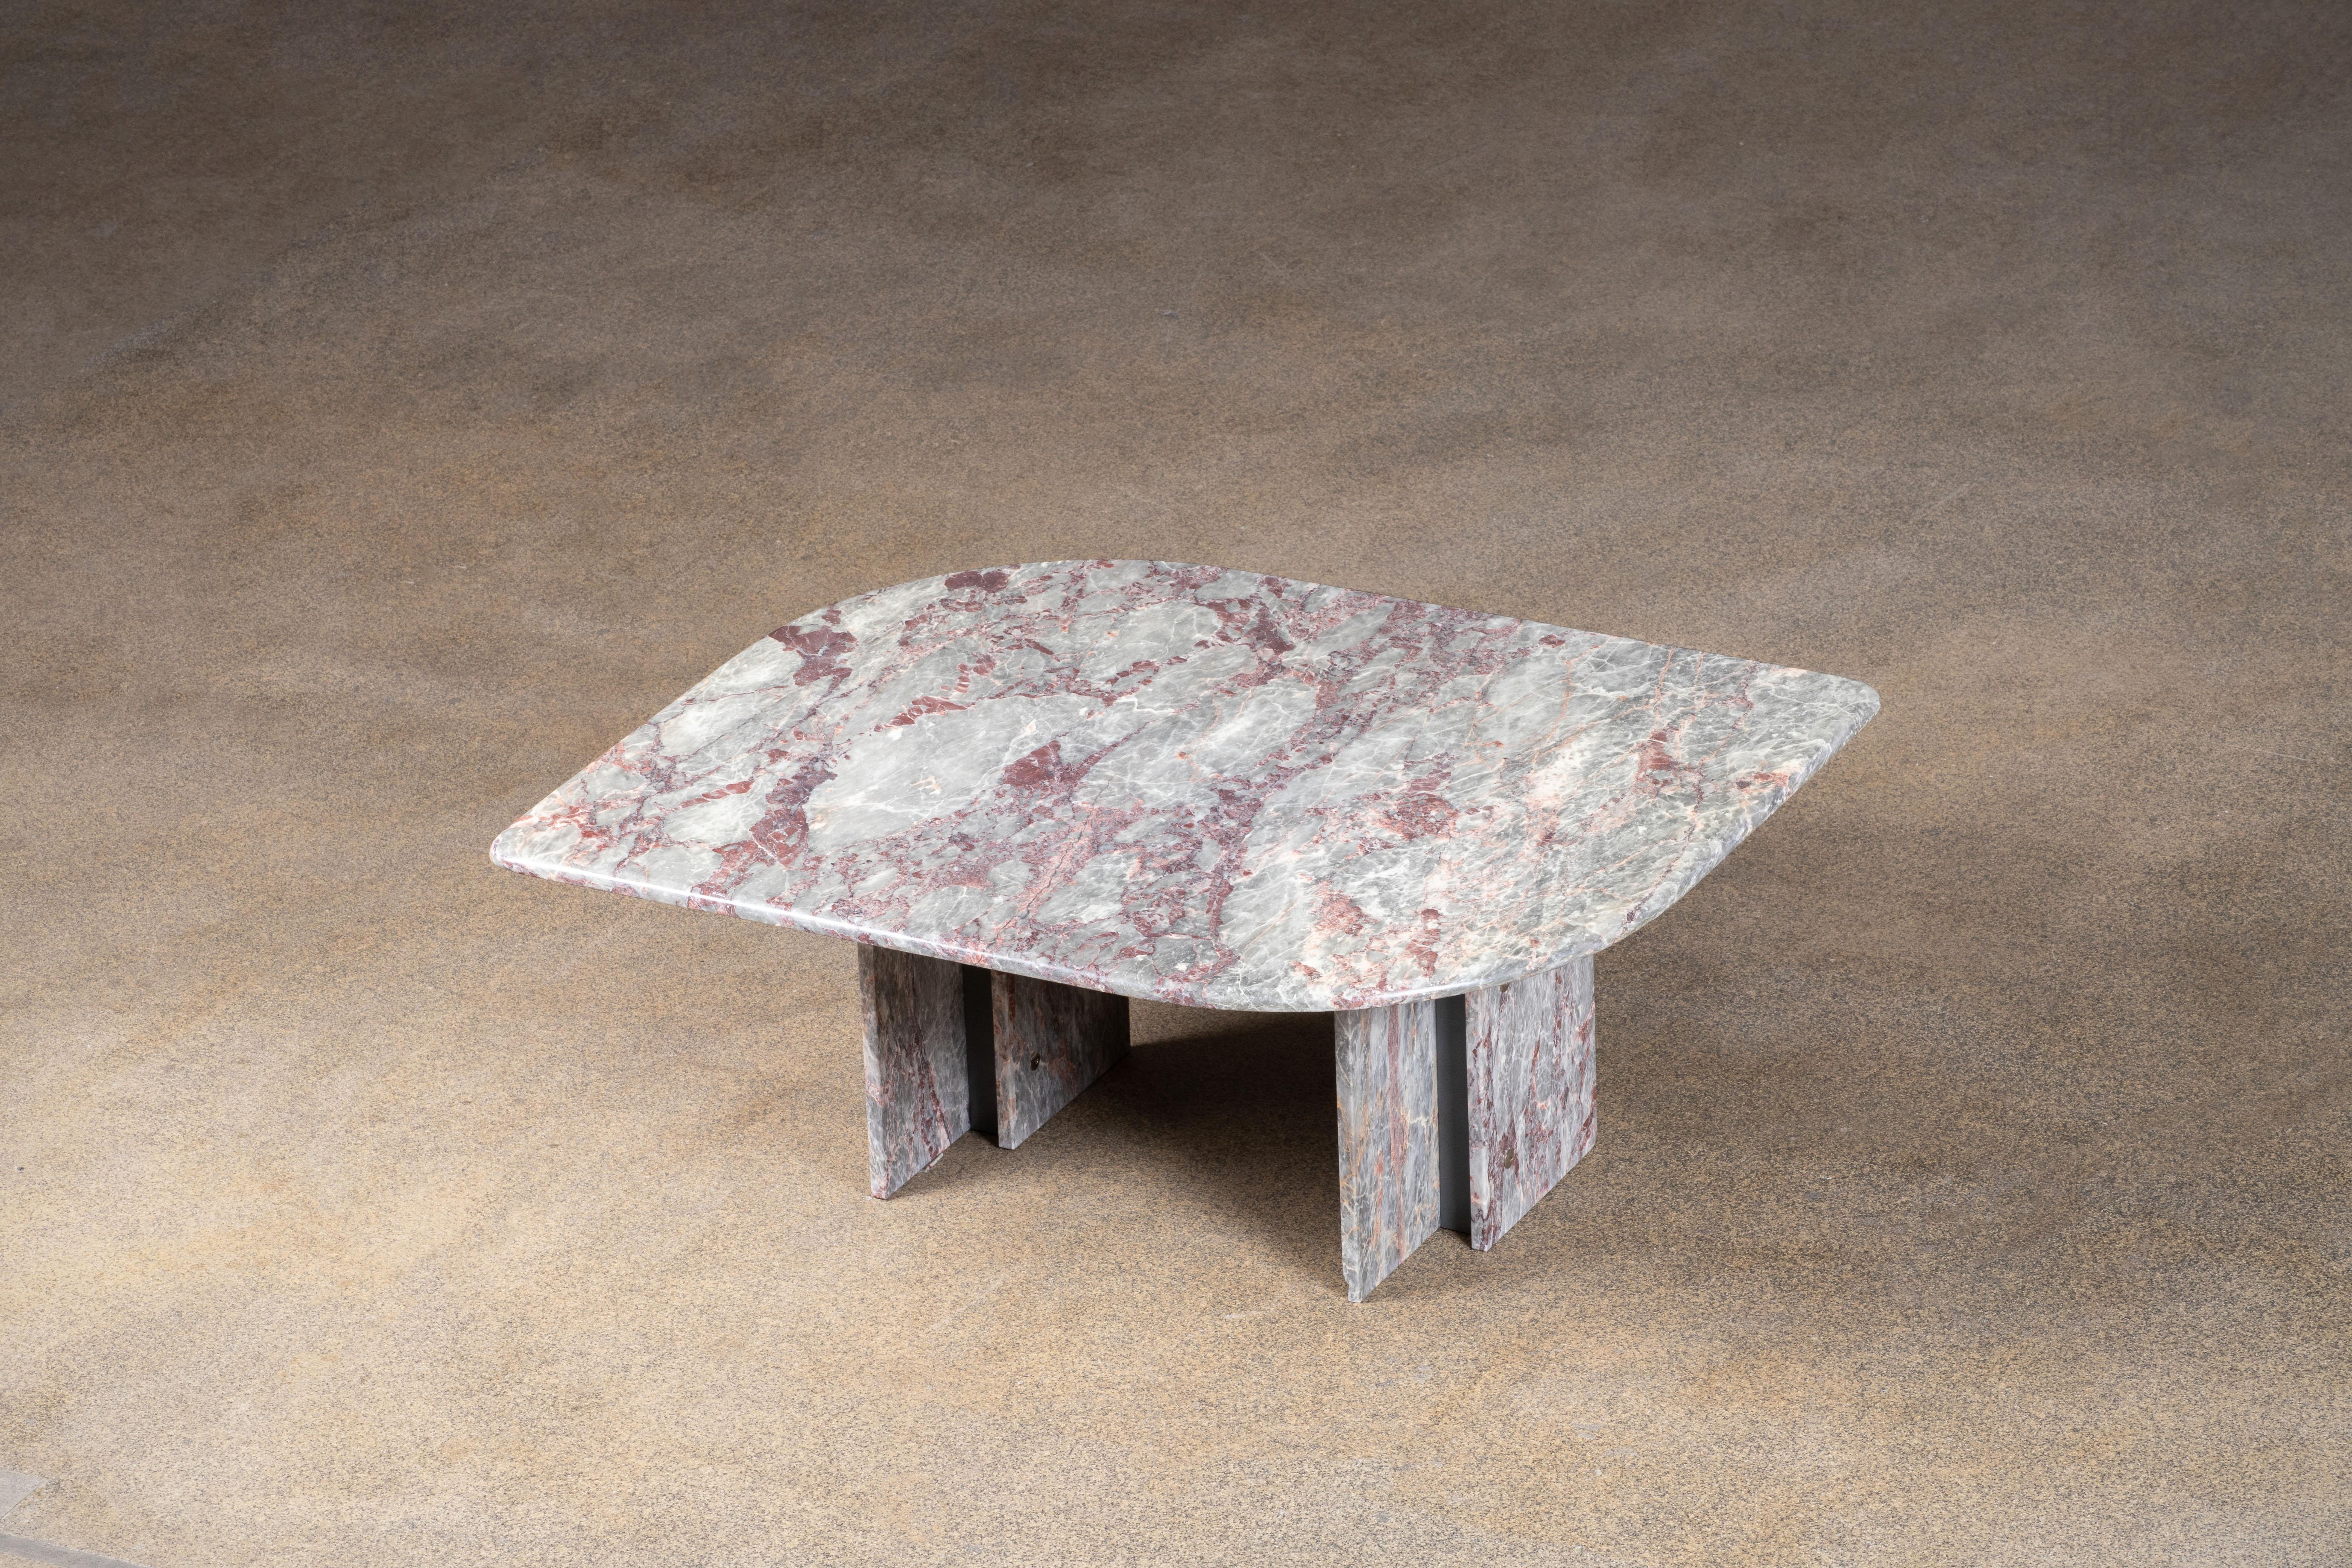 Belle table en marbre gris, blanc et rose.

Le lourd plateau en forme d'œil repose sur deux blocs de marbre avec une structure métallique entre les deux.

Cette table est vraiment remarquable.

